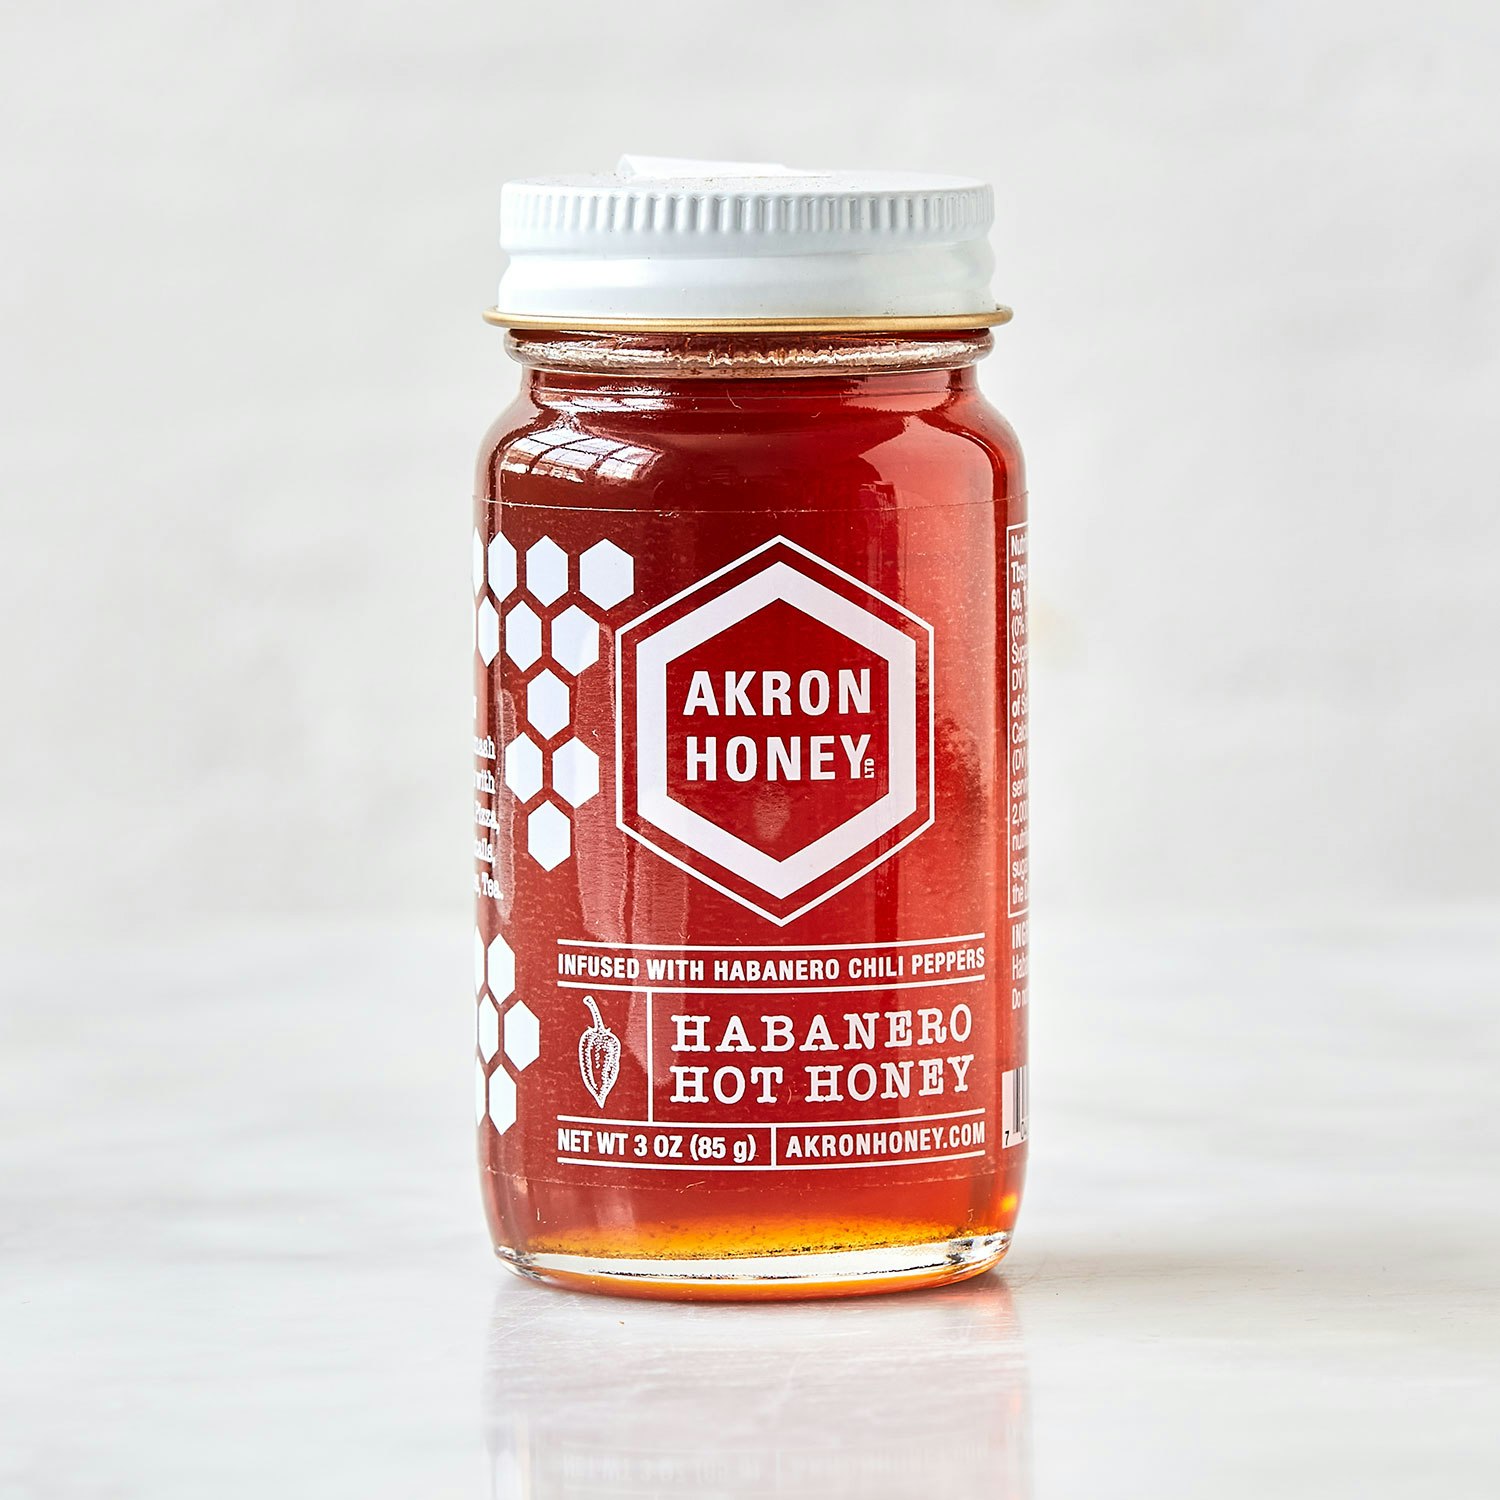 Akron Honey Habanero Hot Honey specialty foods